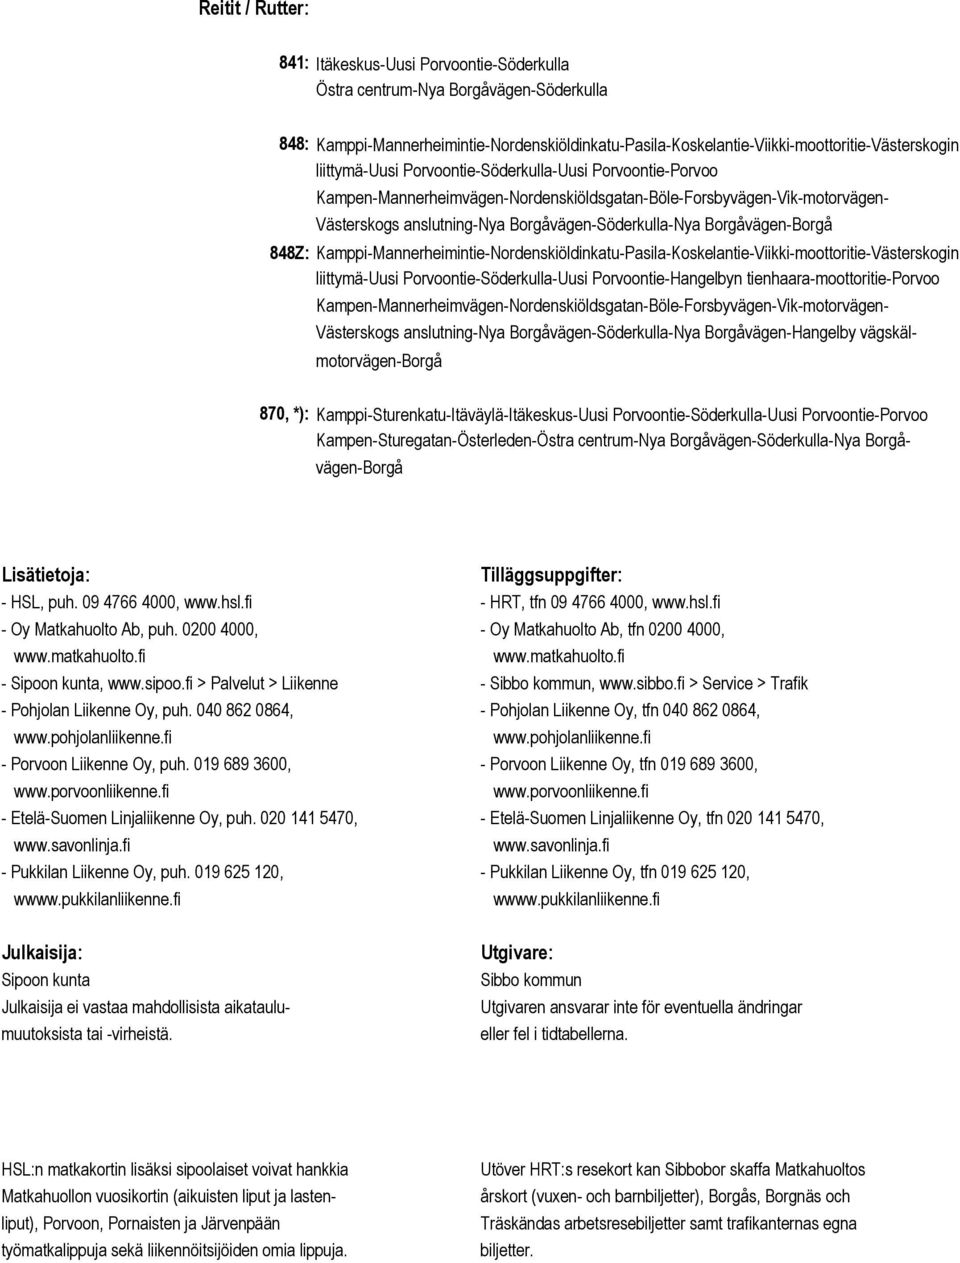 Kamppi-Mannerheimintie-Nordenskiöldinkatu-Pasila-Koskelantie-Viikki-moottoritie-Västerskogin liittymä-uusi Porvoontie-Söderkulla-Uusi Porvoontie-Hangelbyn tienhaara-moottoritie-porvoo